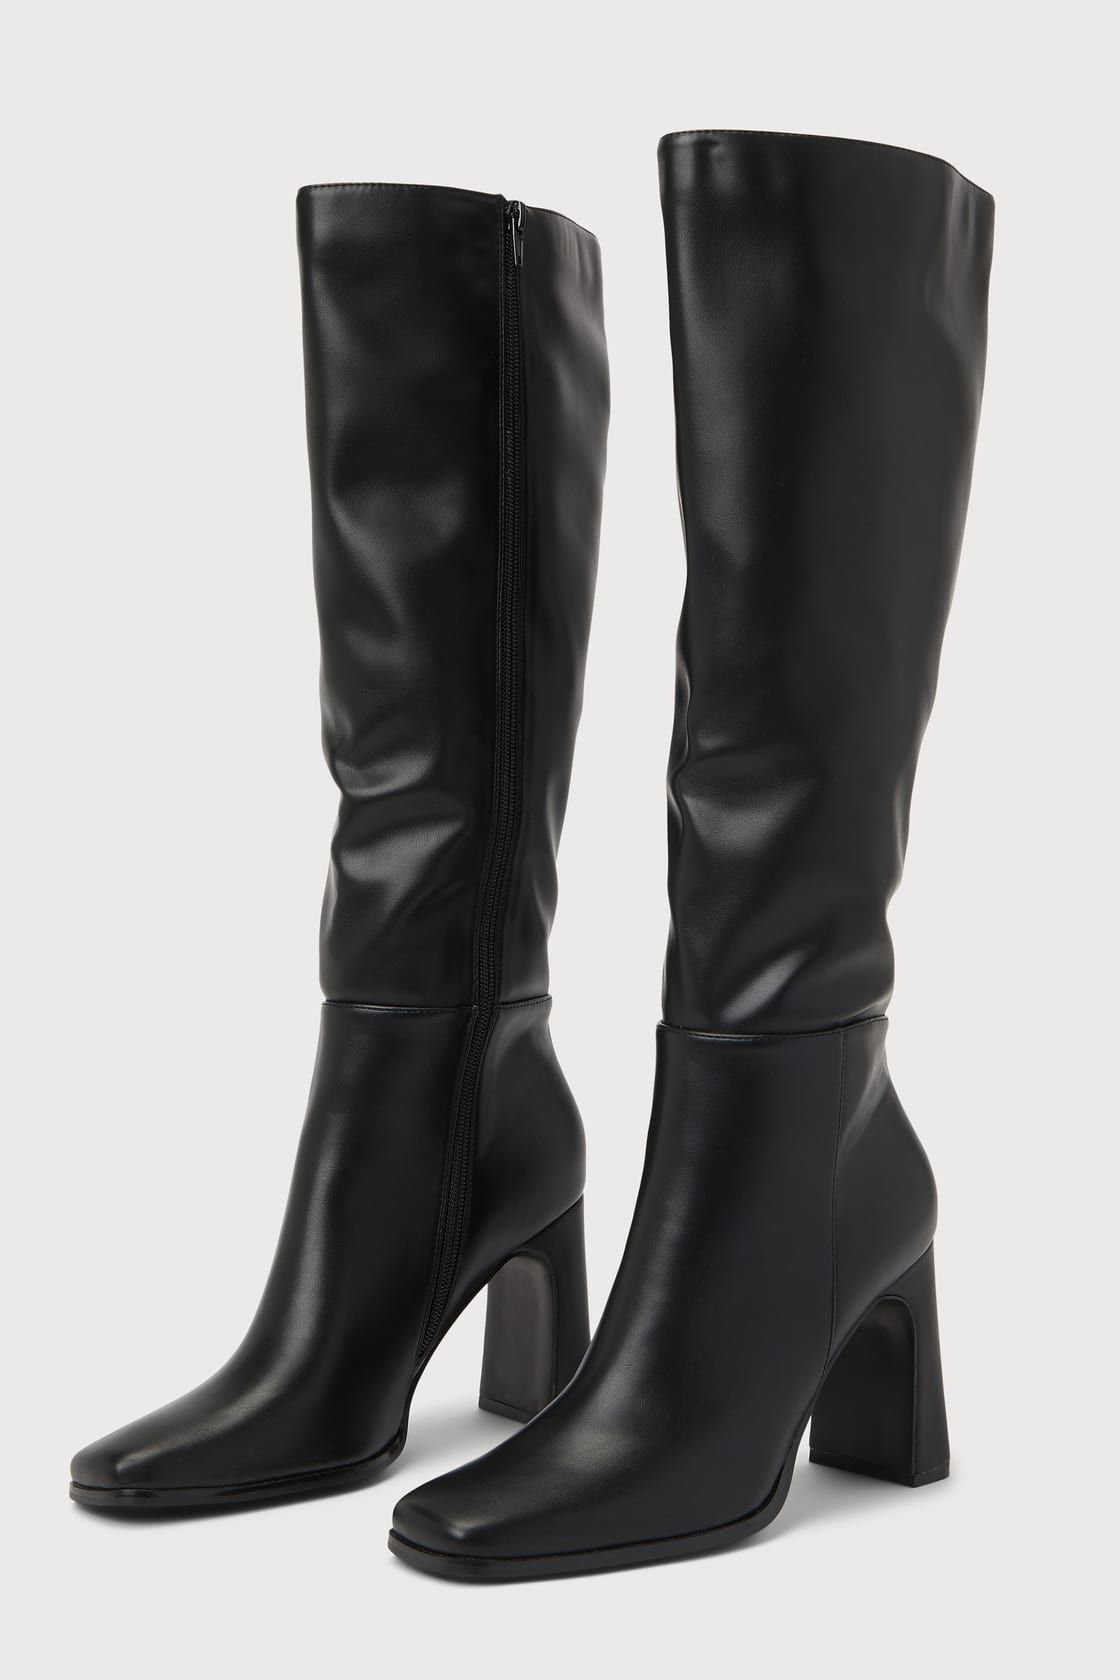 Ceceliaa Black Square Toe Knee-High Boots | Lulus (US)